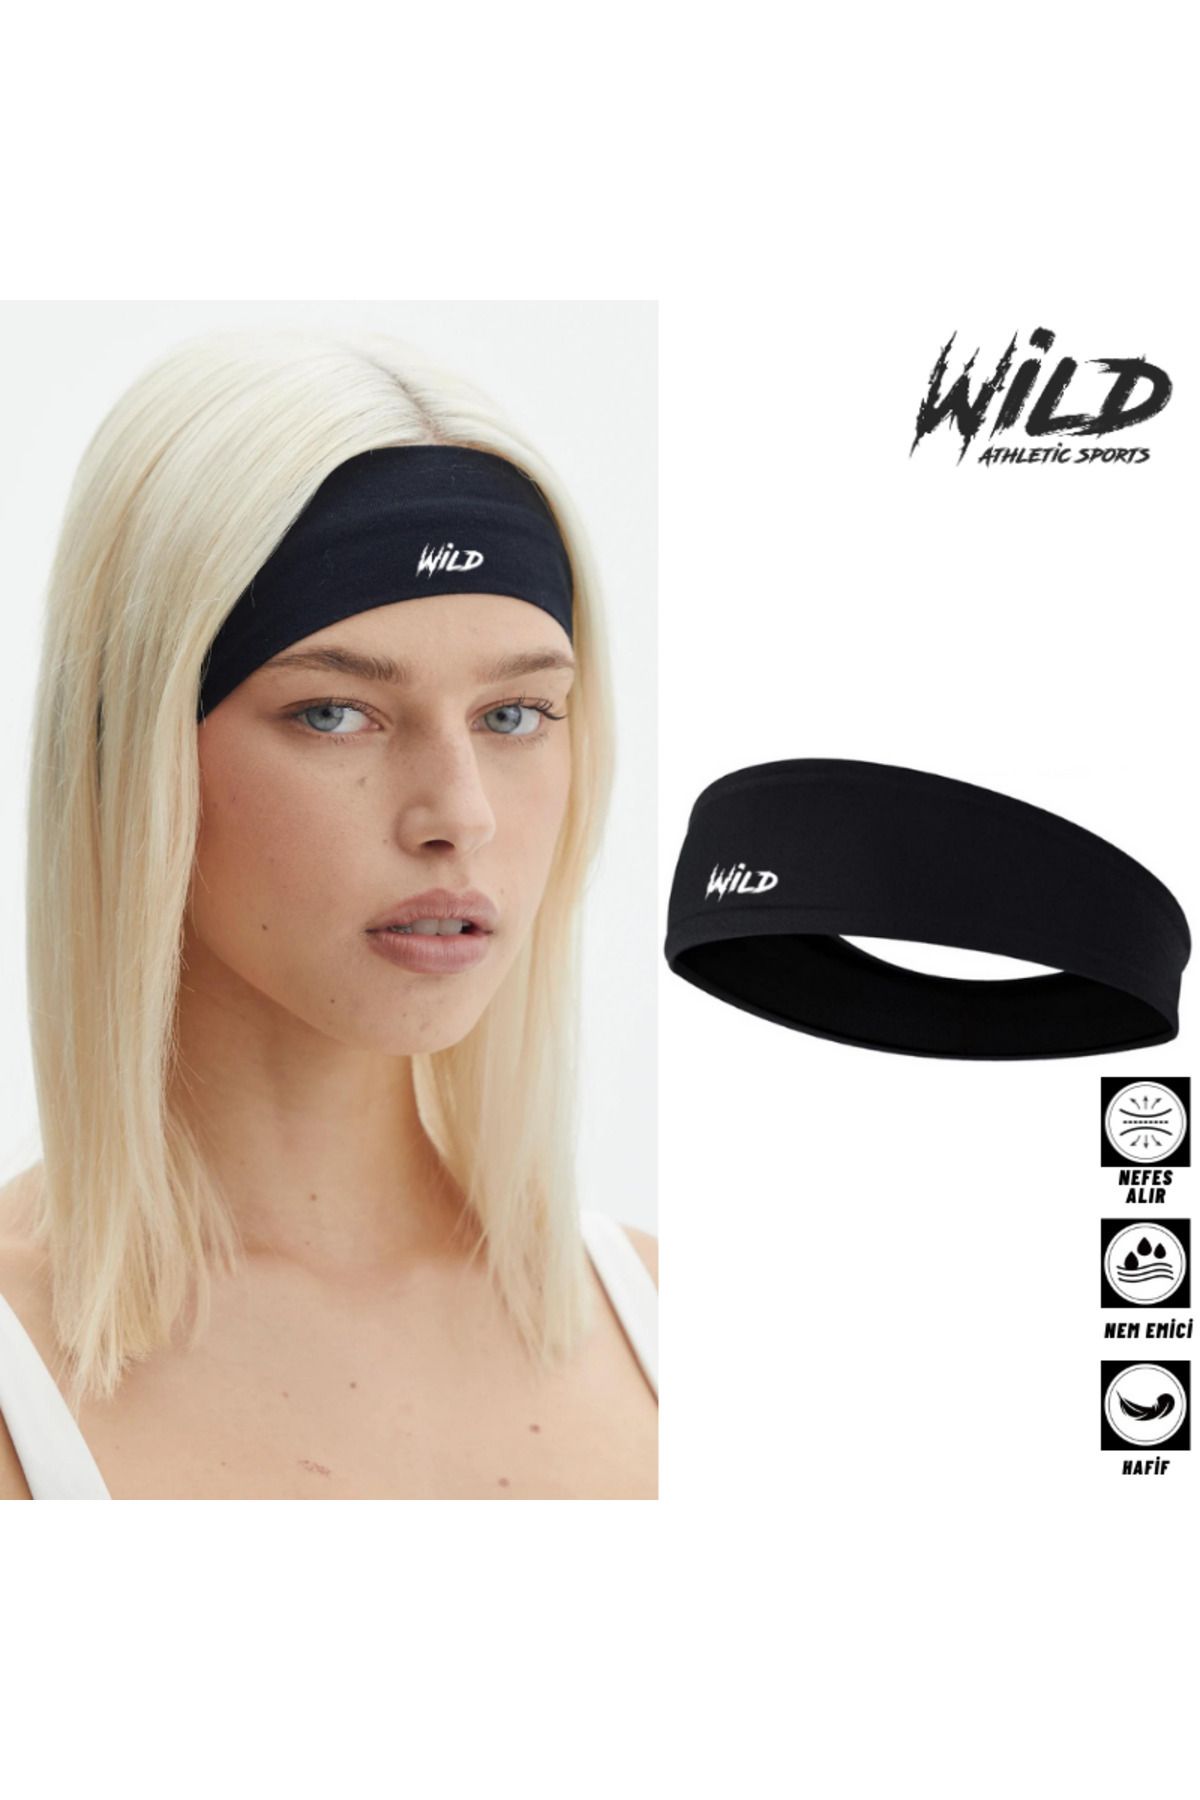 Wild Athletic Spor Yoga Saç Bandı Tokası Bandana Tekli Wildflex 0.2